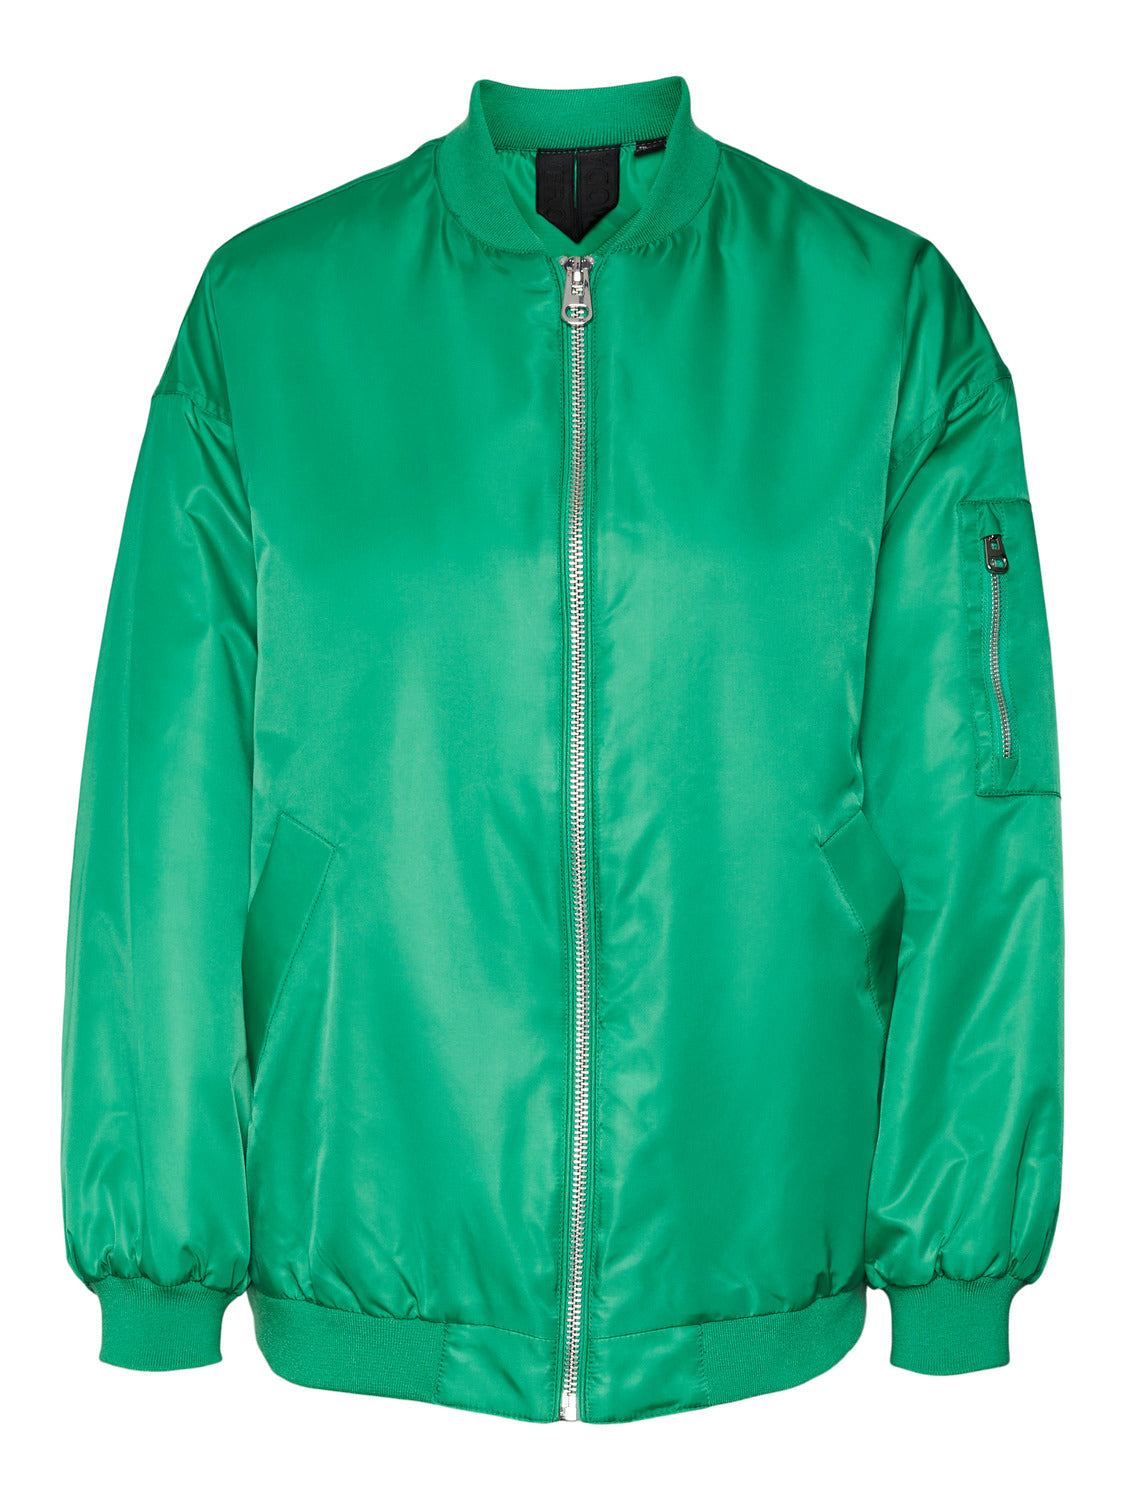 VMAMBER Jacket - Bright Green